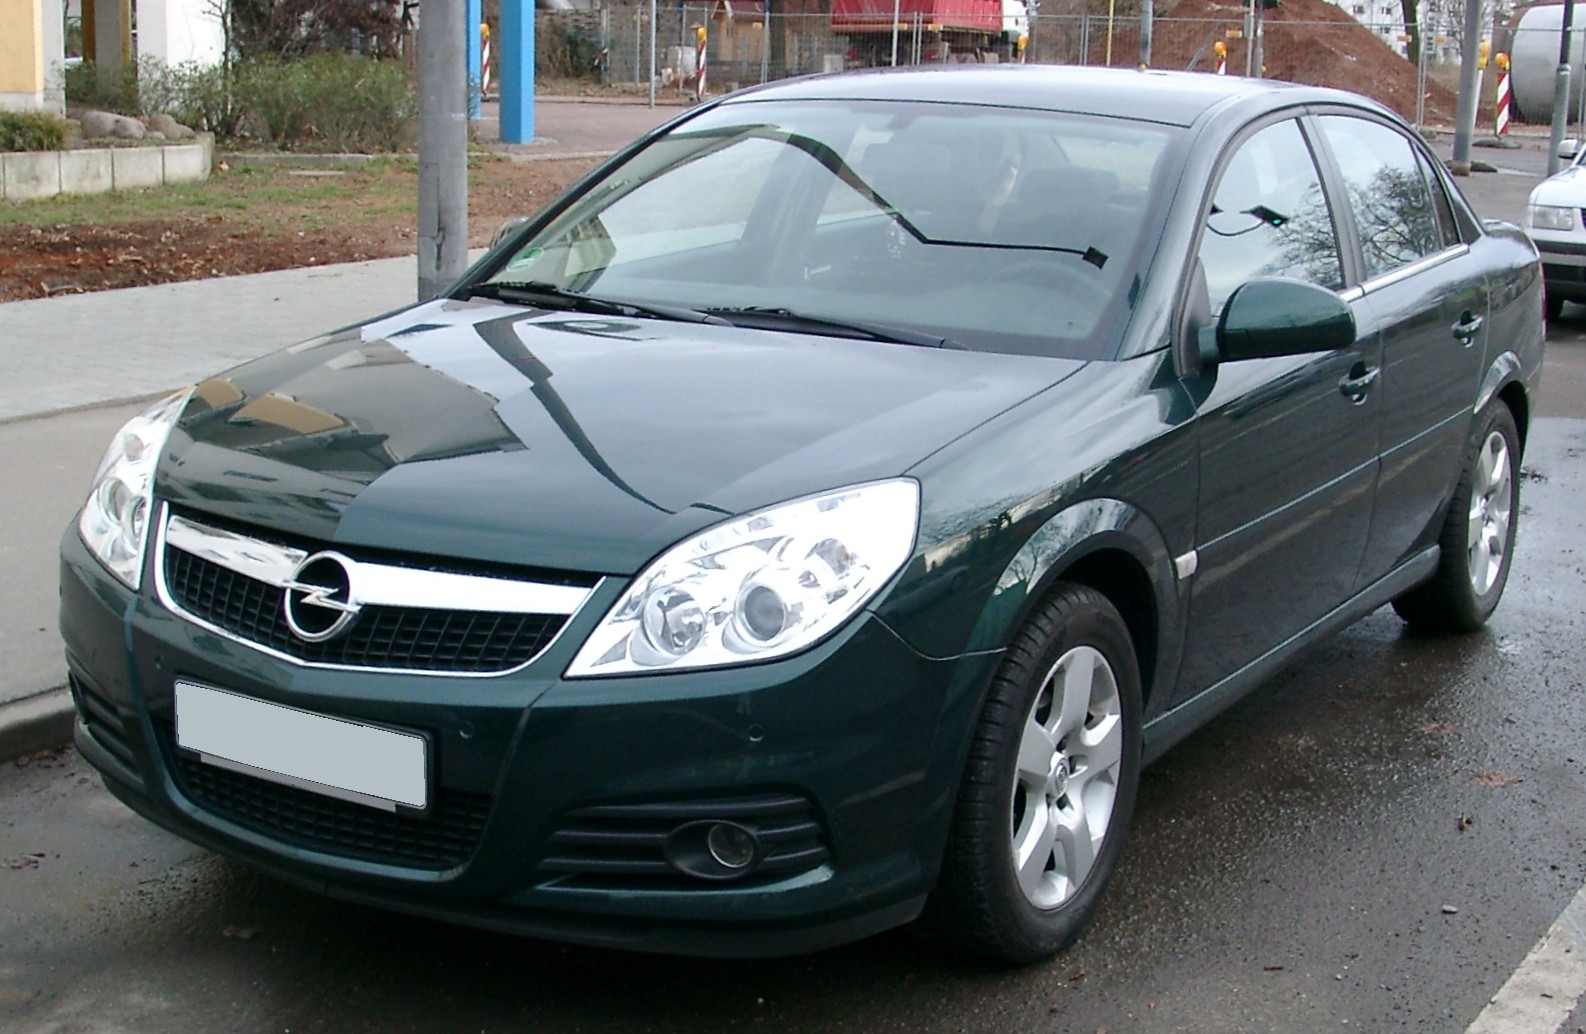 File:Opel Vectra C GTS rear 20081127.jpg - Wikipedia